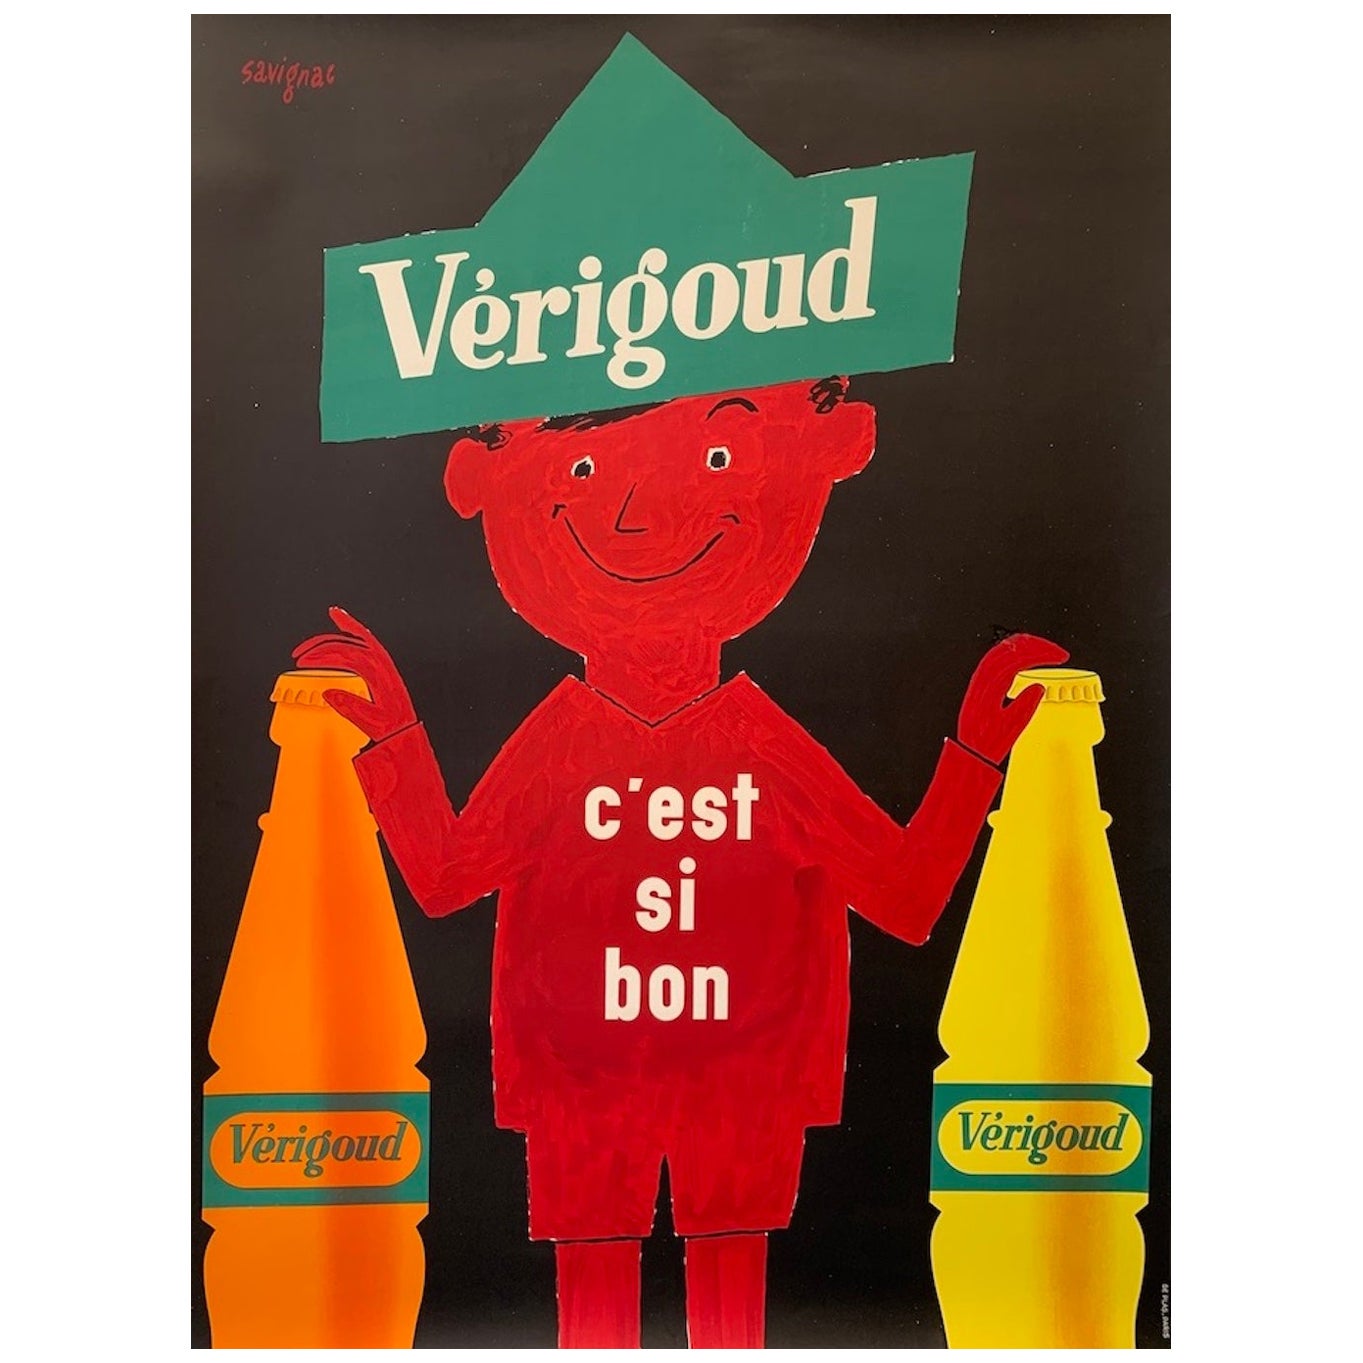 Affiche publicitaire française originale de Verigoud par Savignac, 1955